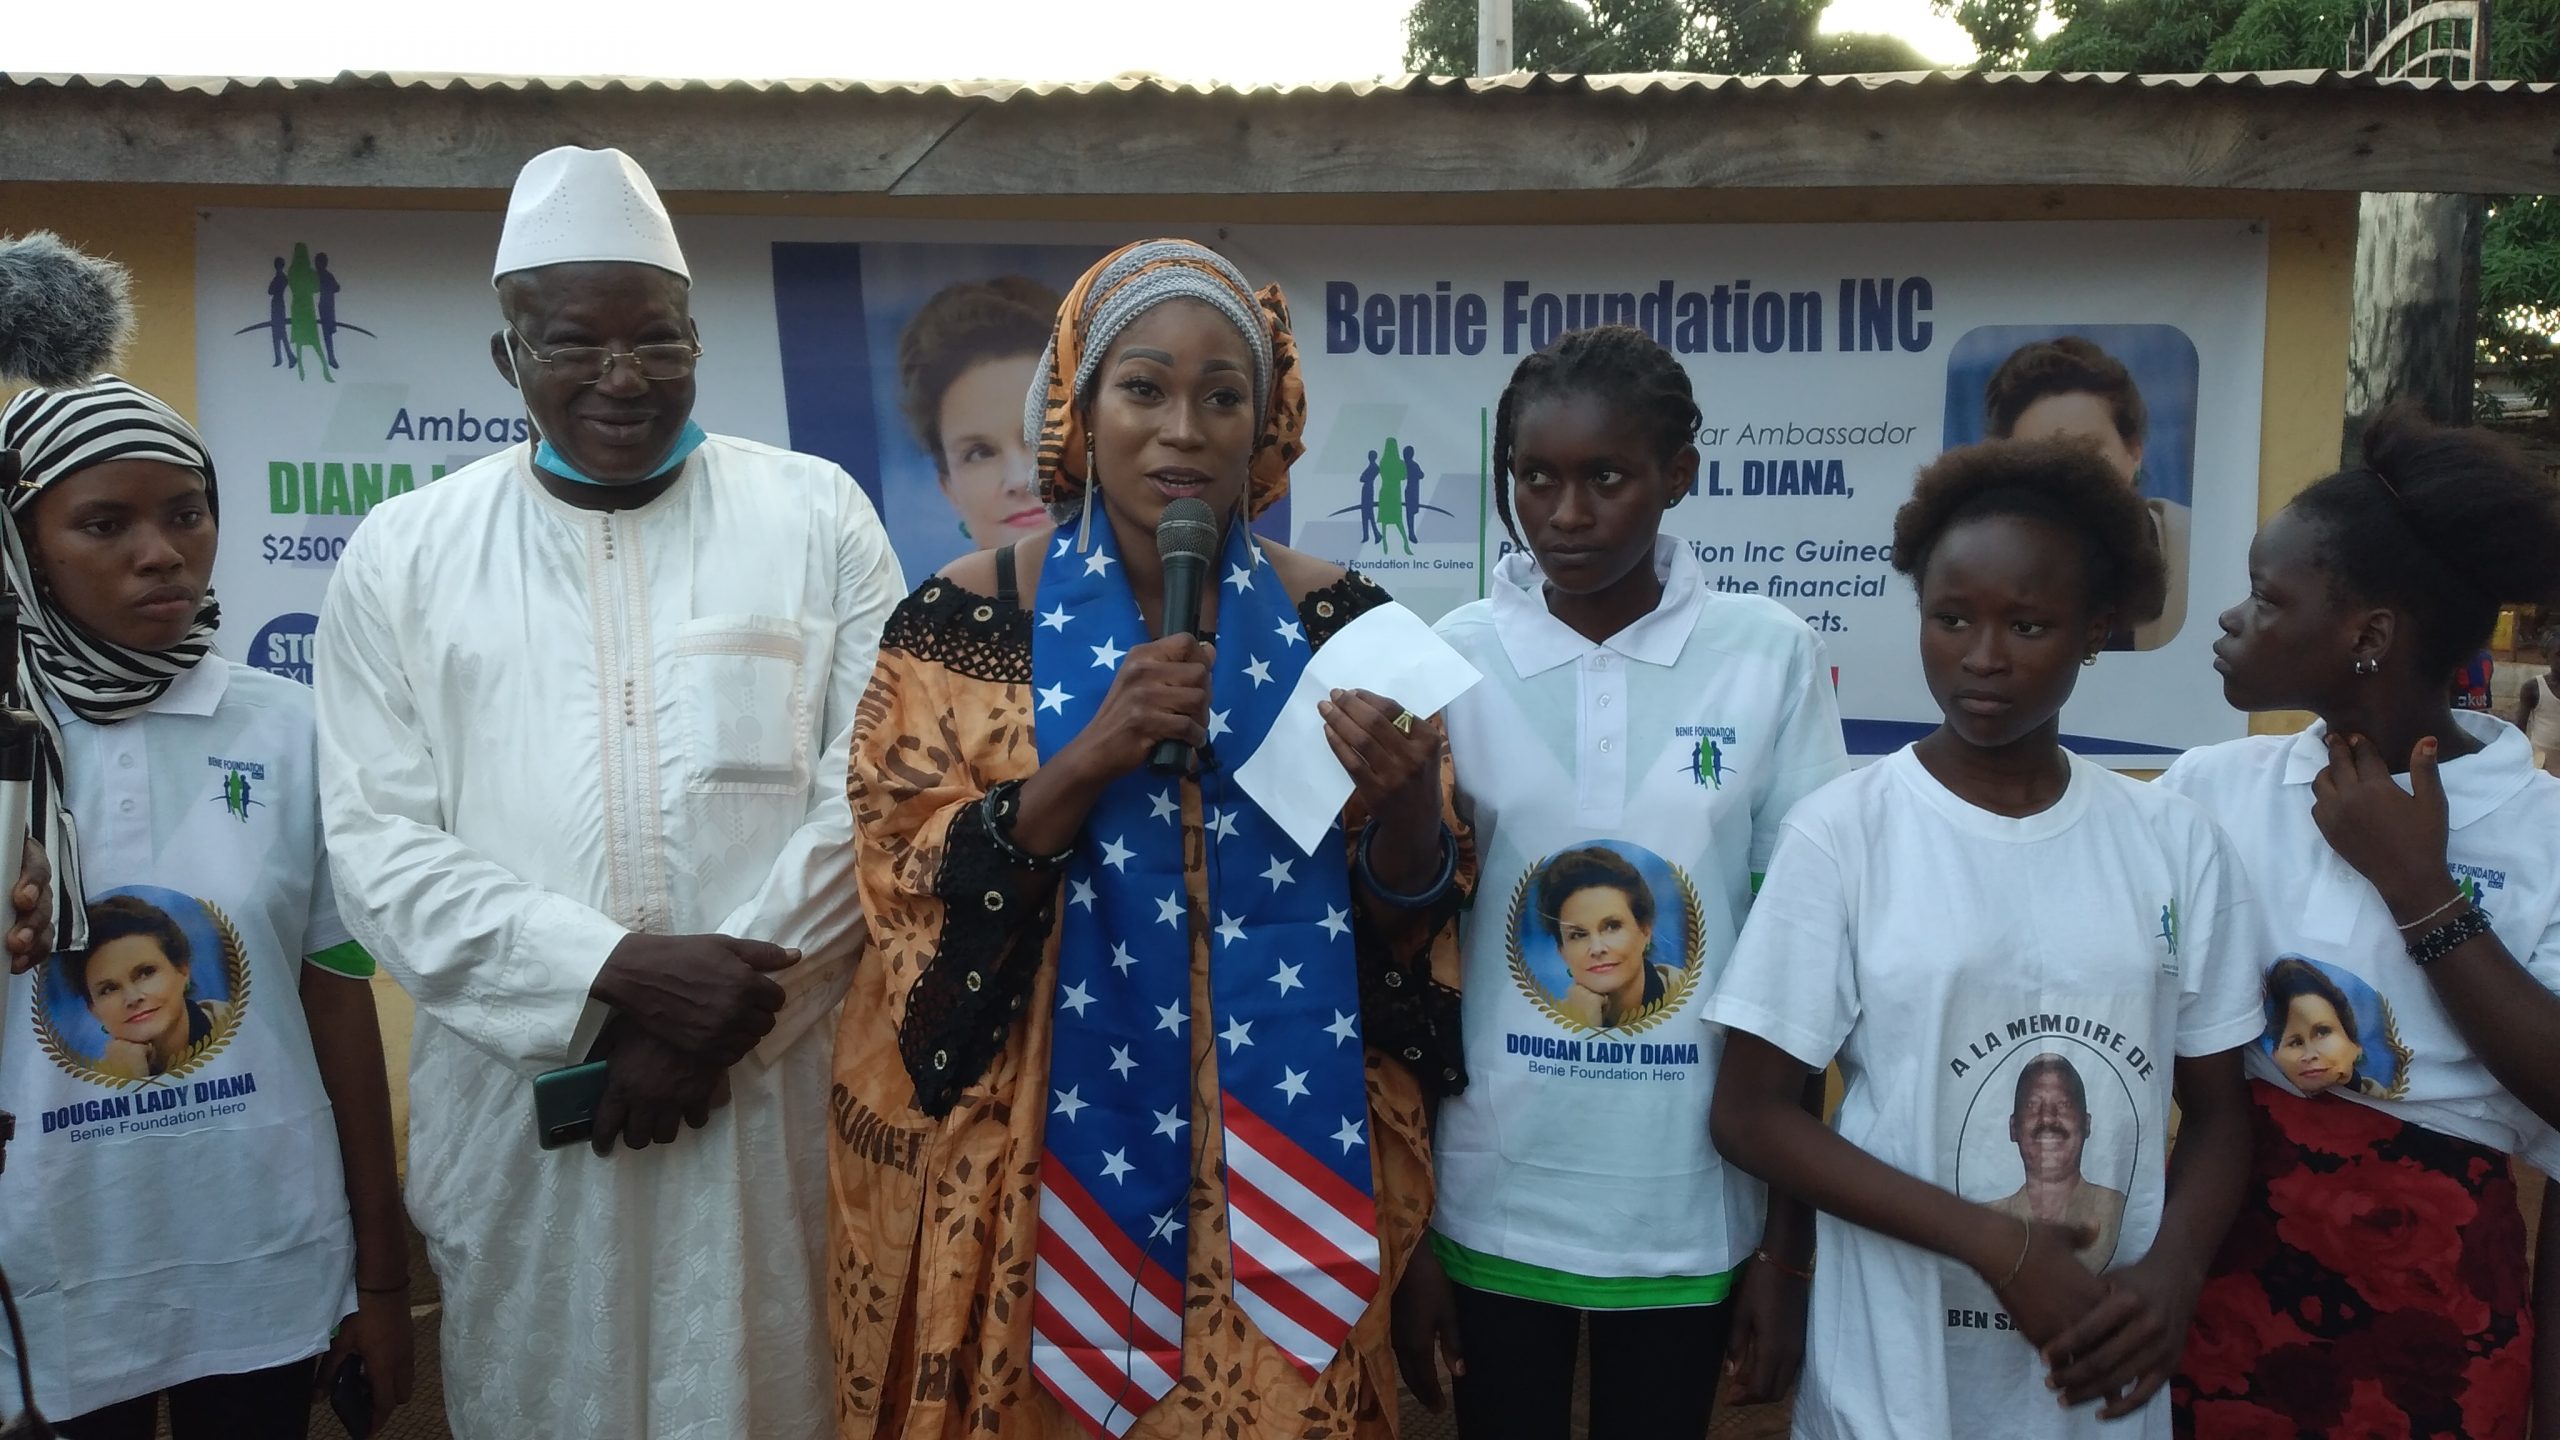 Benie Foundation INC-Guinée dit merci à madame Diana Lady DOUGAN et lance une campagne de levée de fonds